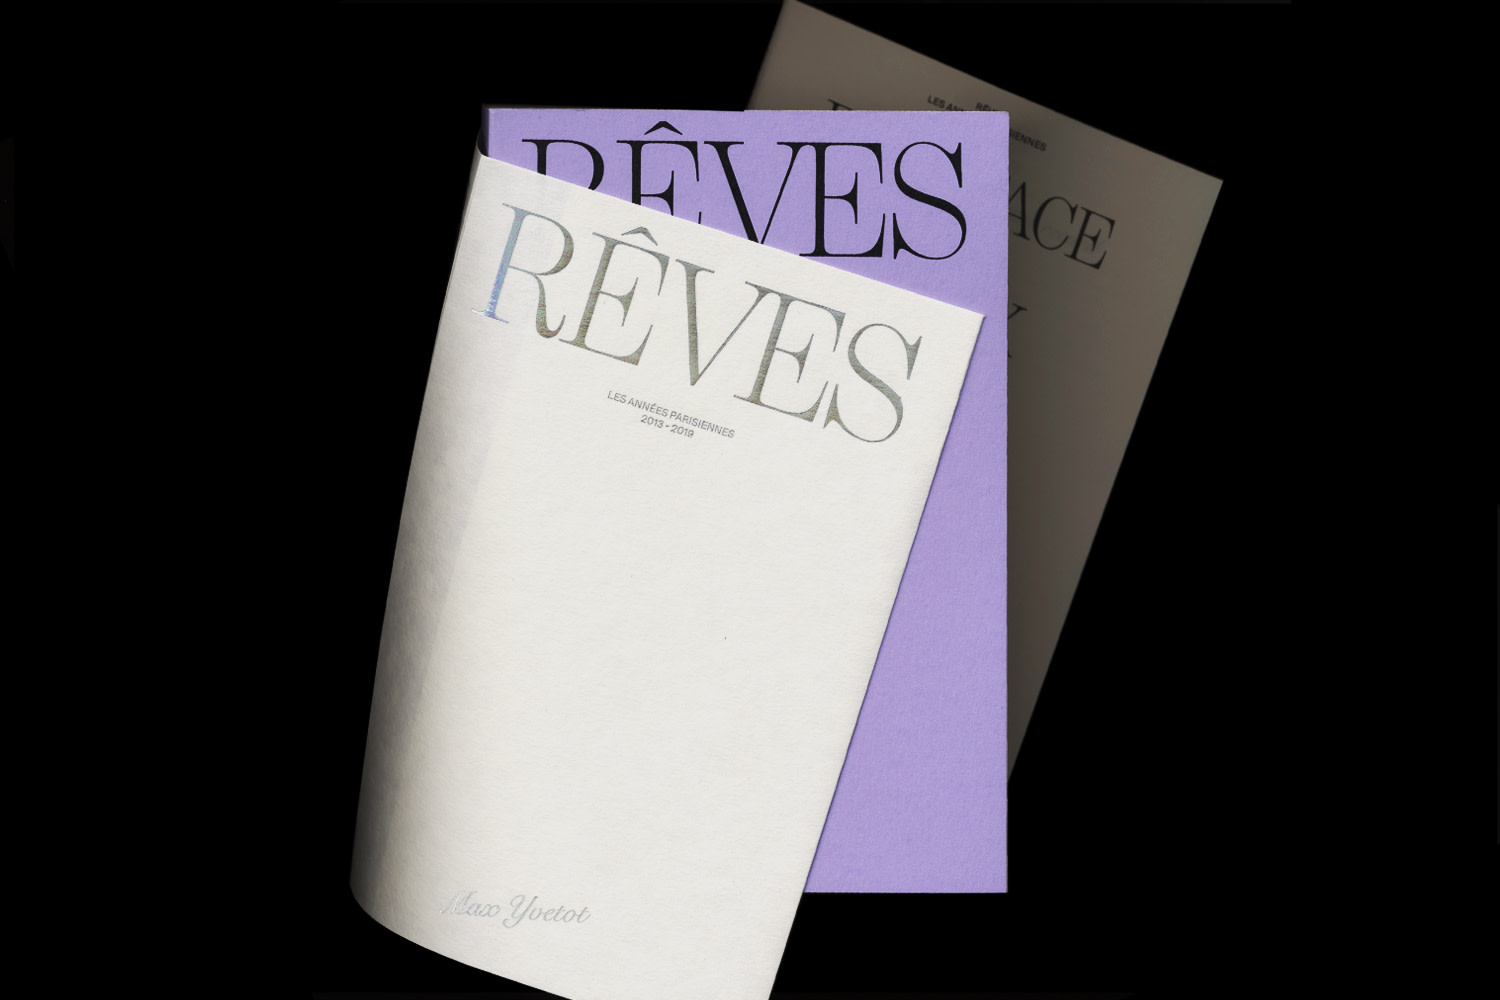 Reves by Max Yvetot